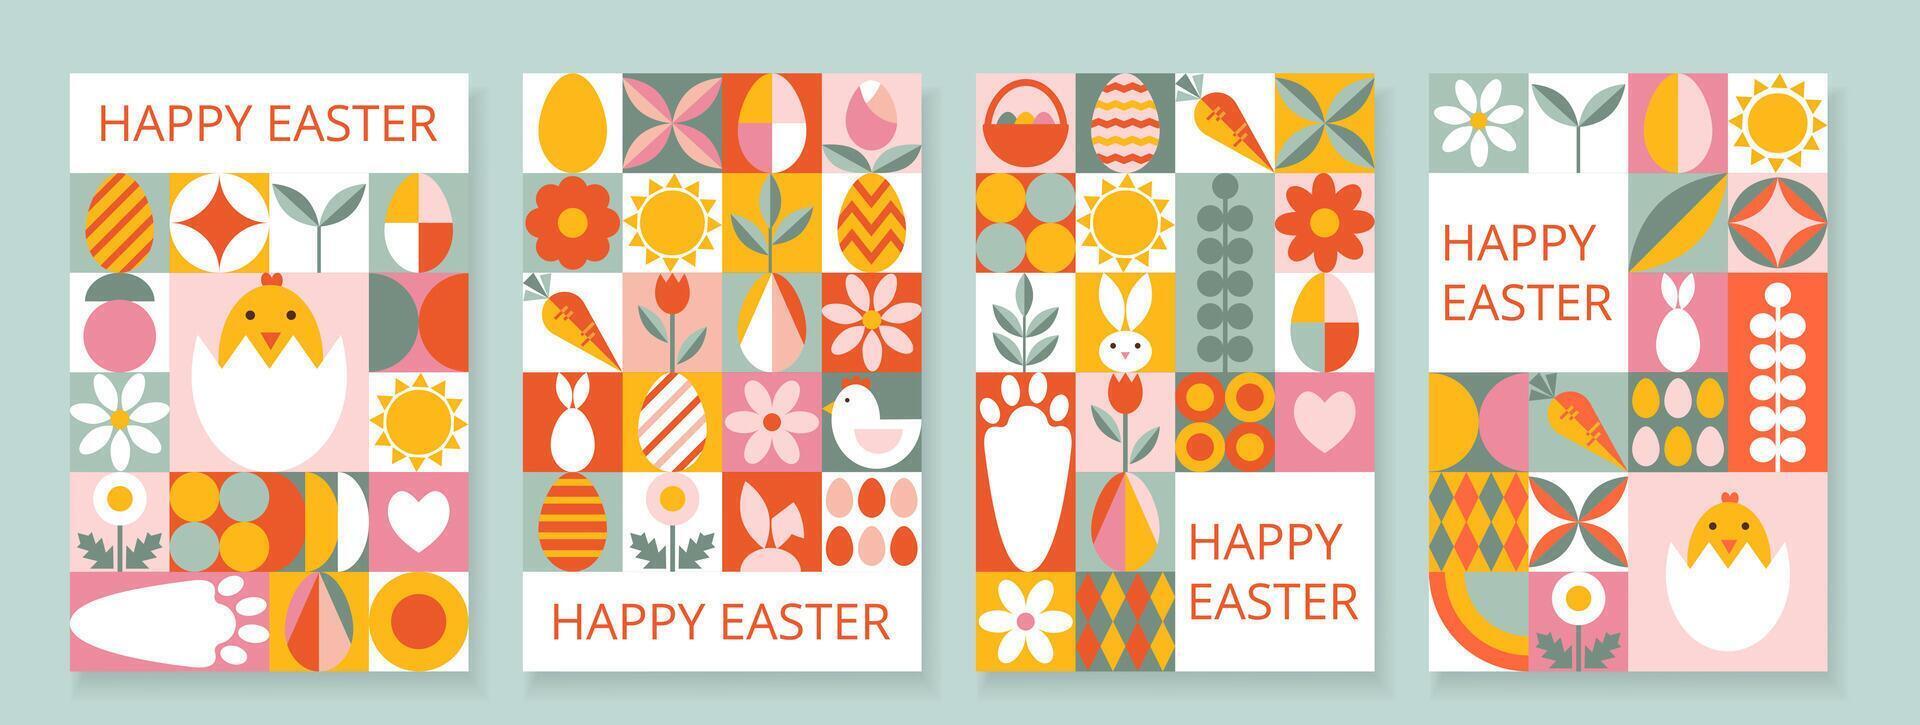 colección 4 4 multicolor festivo contento Pascua de Resurrección plantillas para tarjeta, póster, volantes, bandera, cubrir. de moda diseño con geométrico formas y tipografía. Bauhaus estilo. vector